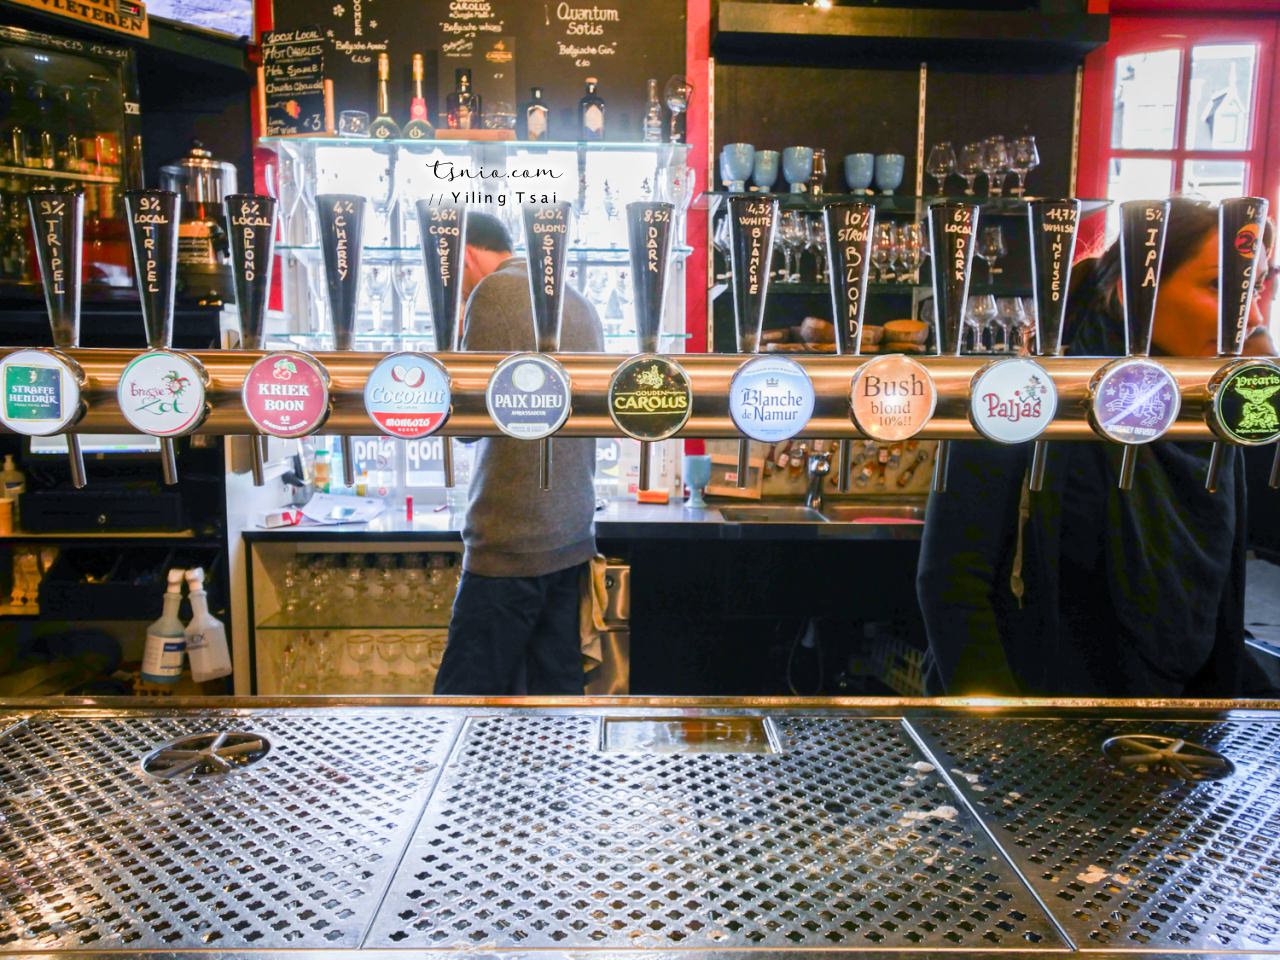 比利時布魯日啤酒推薦 2Be 河岸旁啤酒專賣店酒吧 布魯日啤酒牆